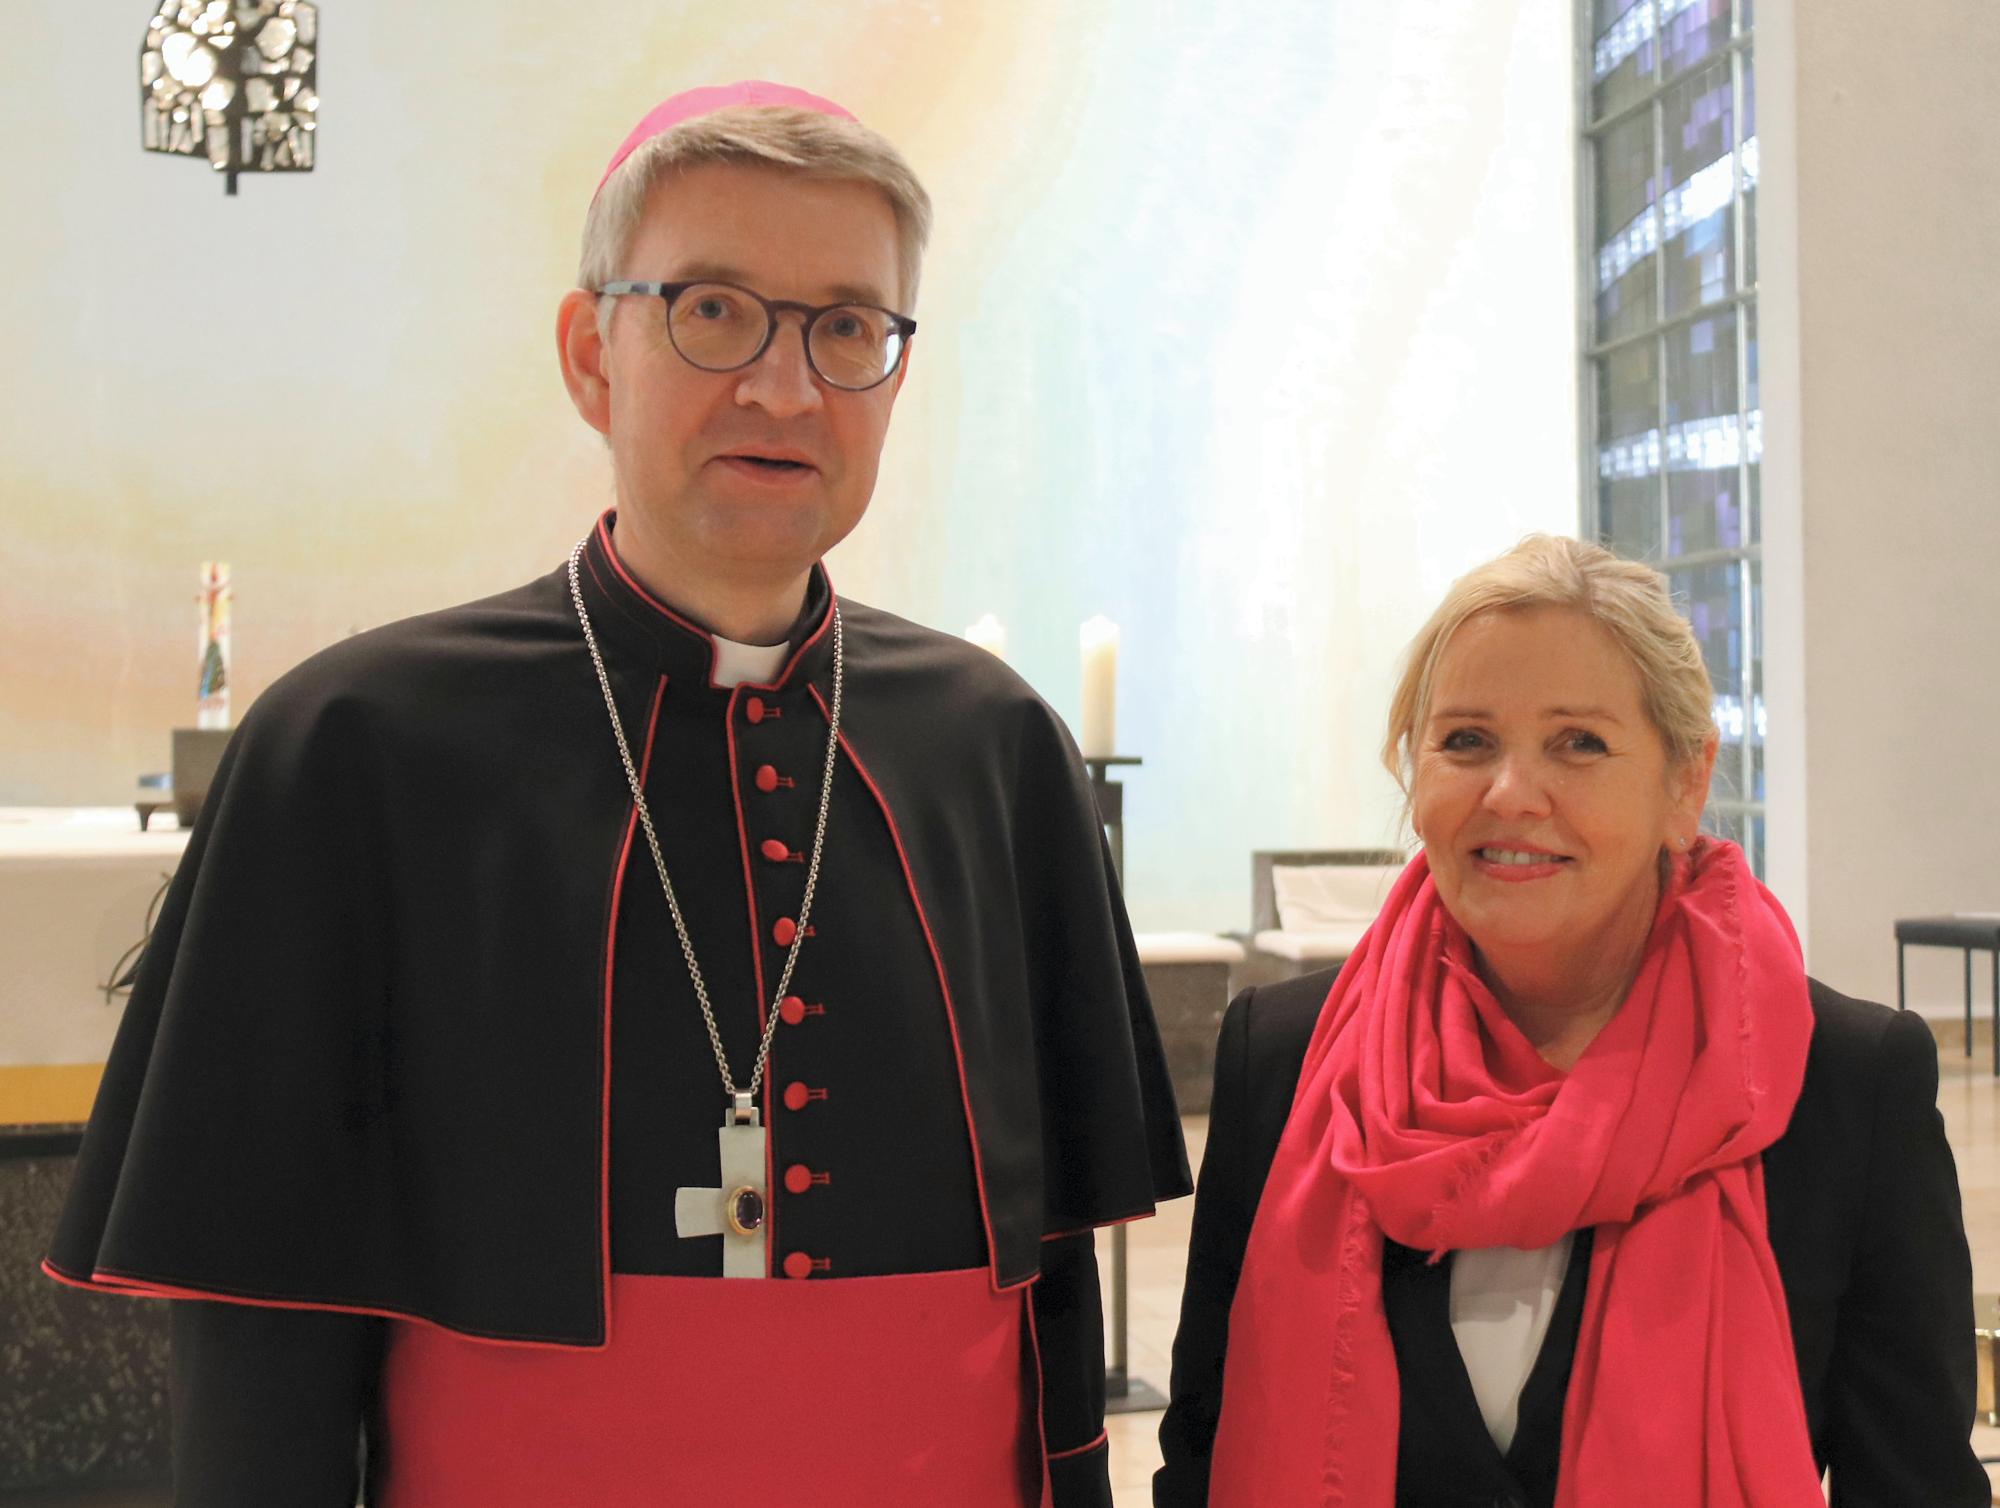 Offenbach, 29.1.2020: Bischof Peter Kohlgraf und Marie-Luise Trocholepczy, die scheidende Leiterin der Marienschule in Offenbach (c) Bistum Mainz / Matschak